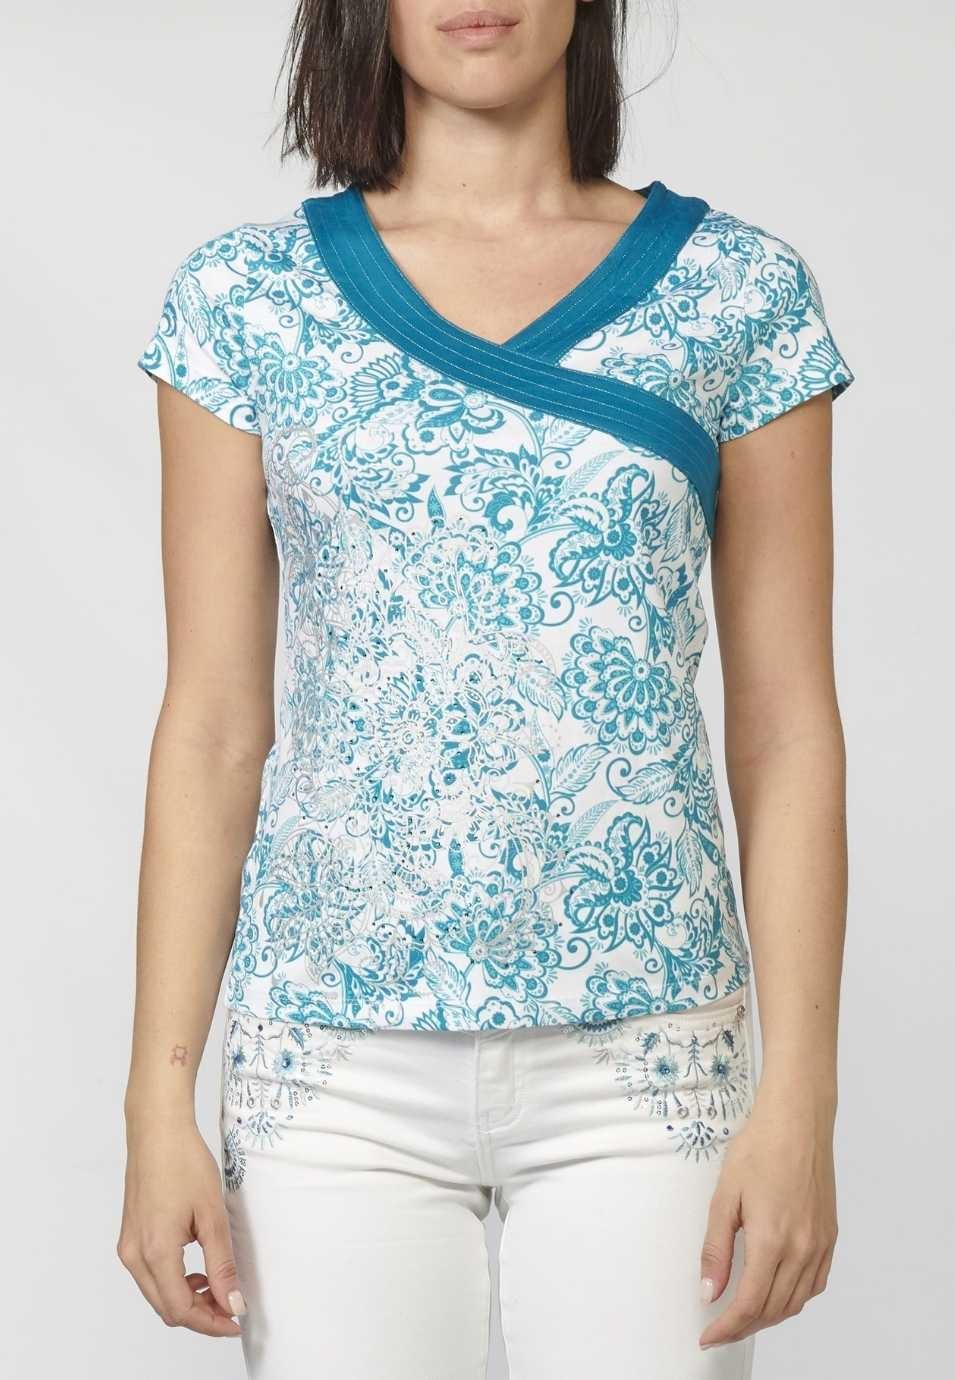 Camiseta Top manga corta de Algodón con Escote de Pico cruzado y Estampado Floral para Mujer 3